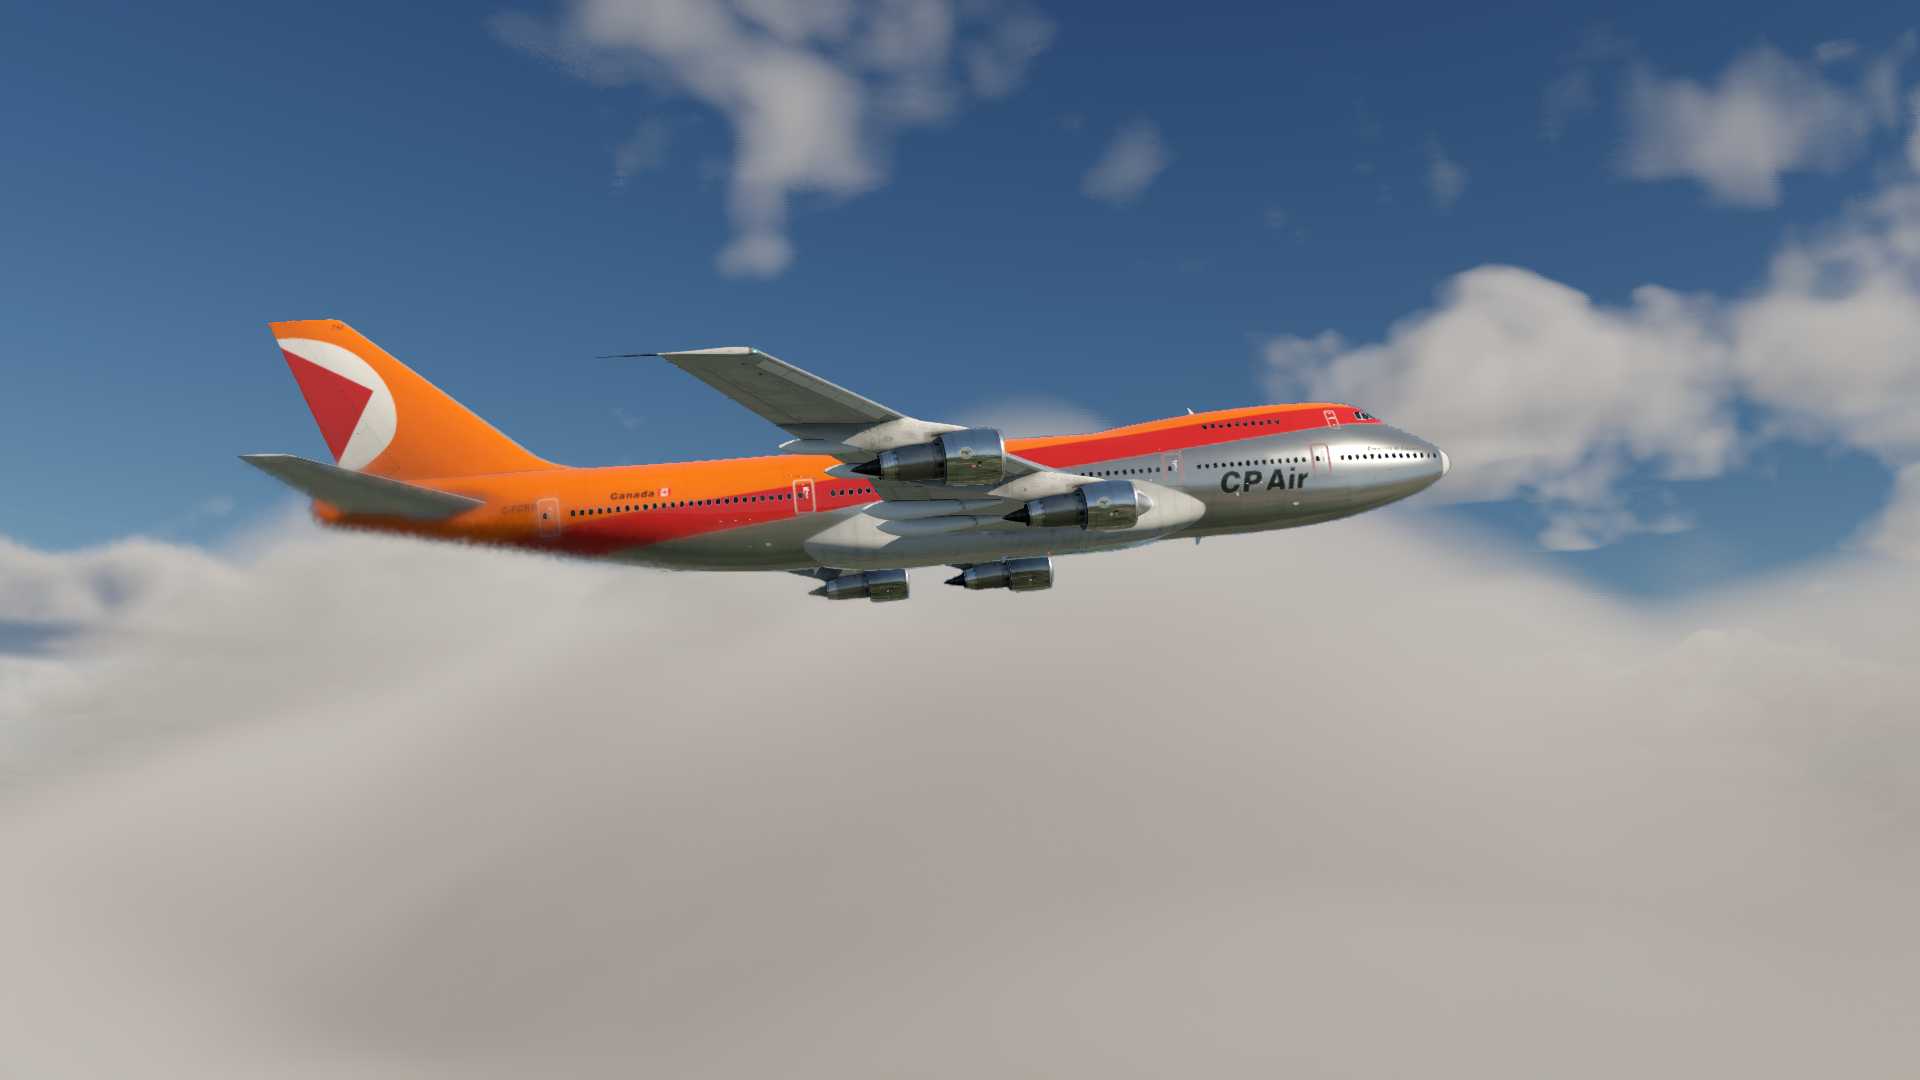 CP AIR 742降落马尼拉-7108 